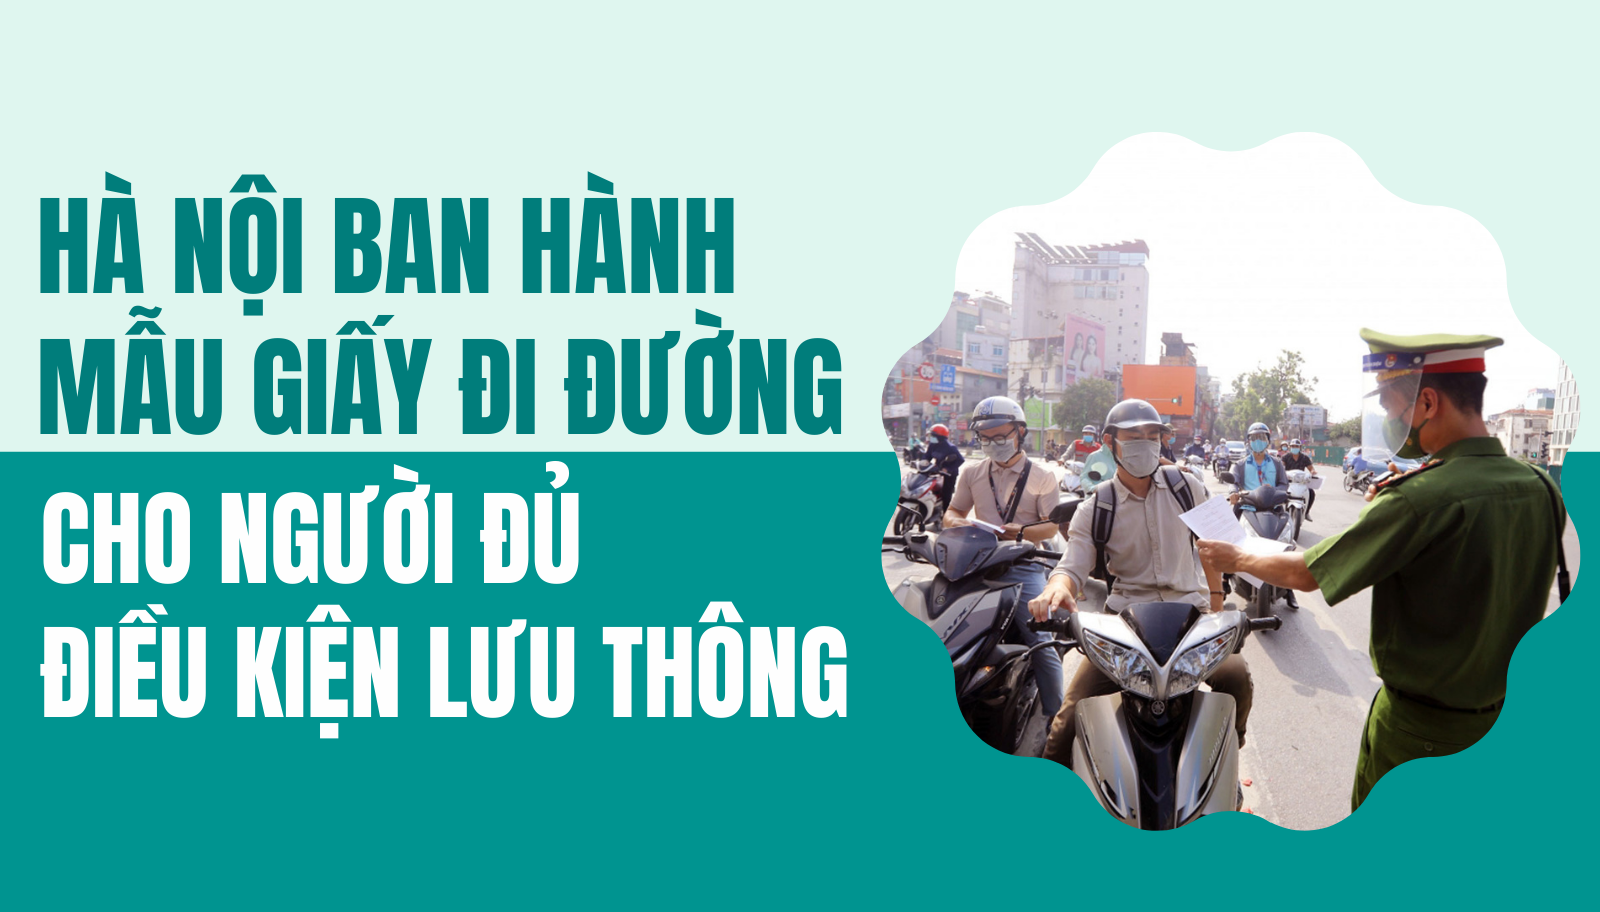 [Infographic] Hà Nội: Ban hành mẫu giấy đi đường cho người đủ điều kiện lưu thông